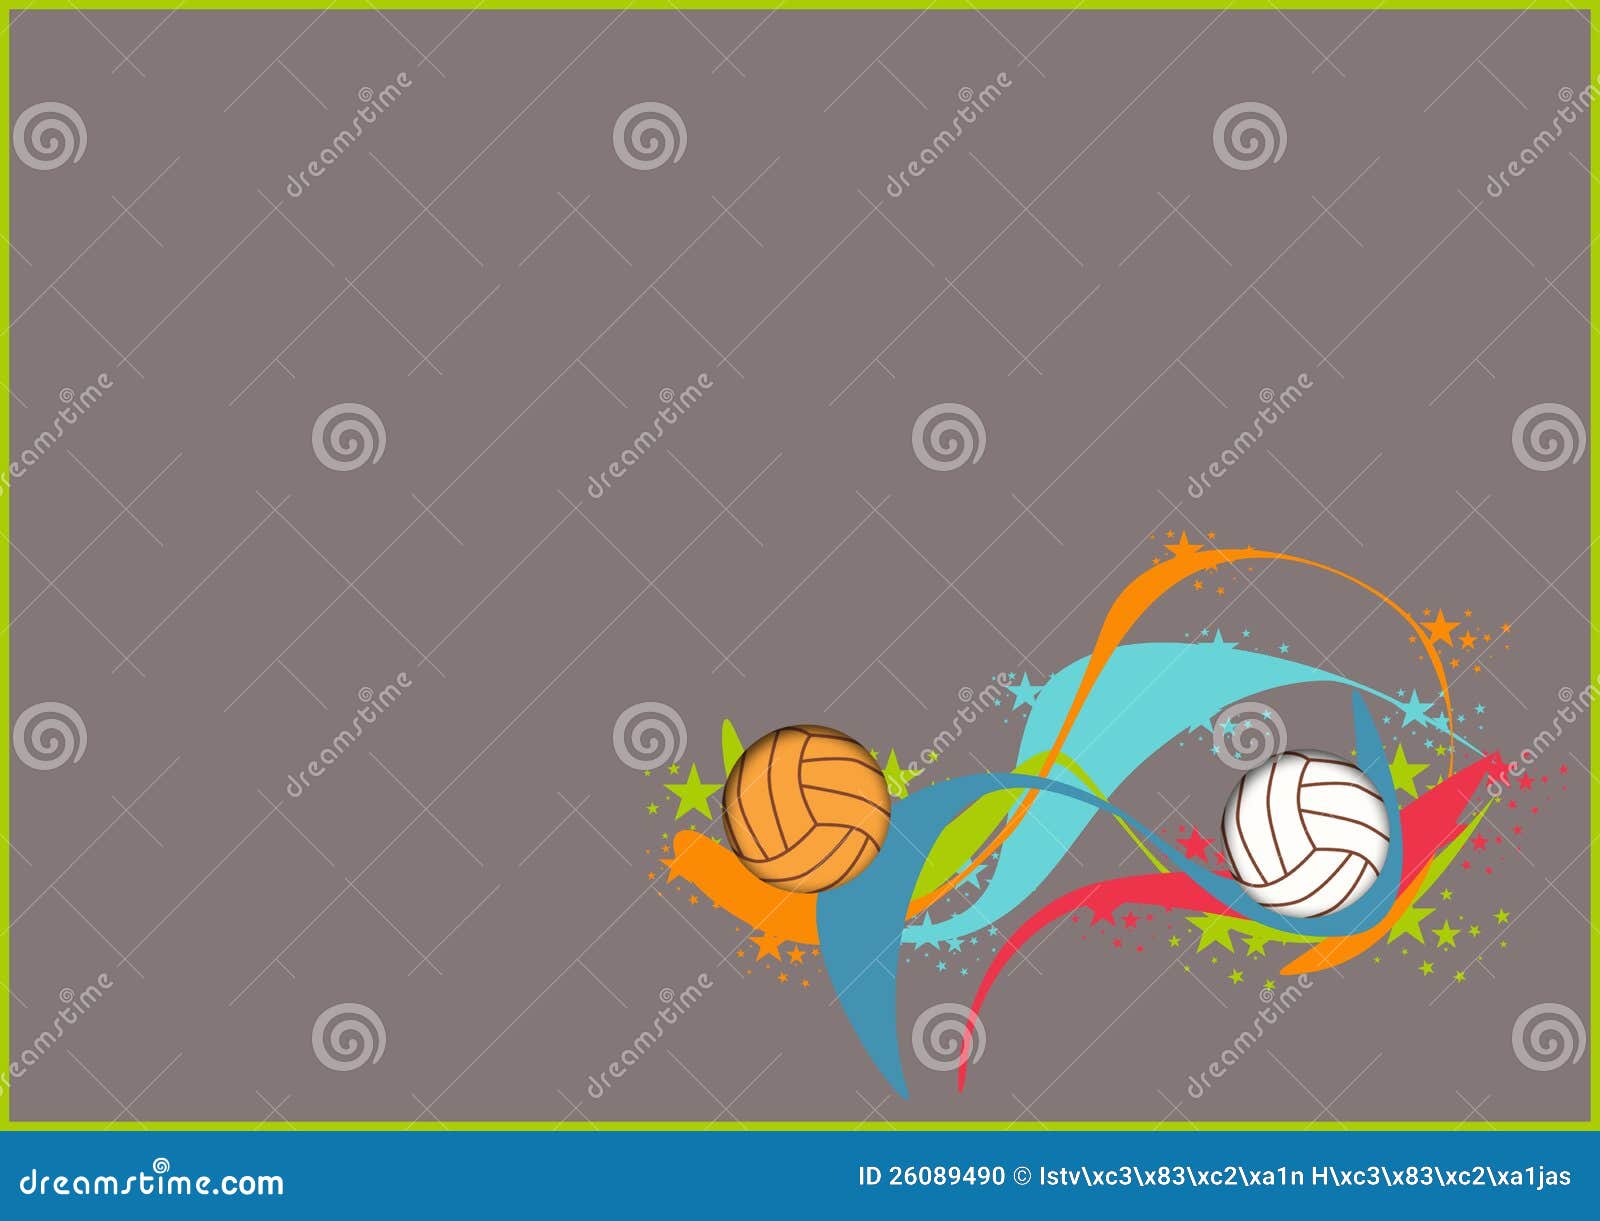 Volleyballs or handball stock illustration. Illustration of ...